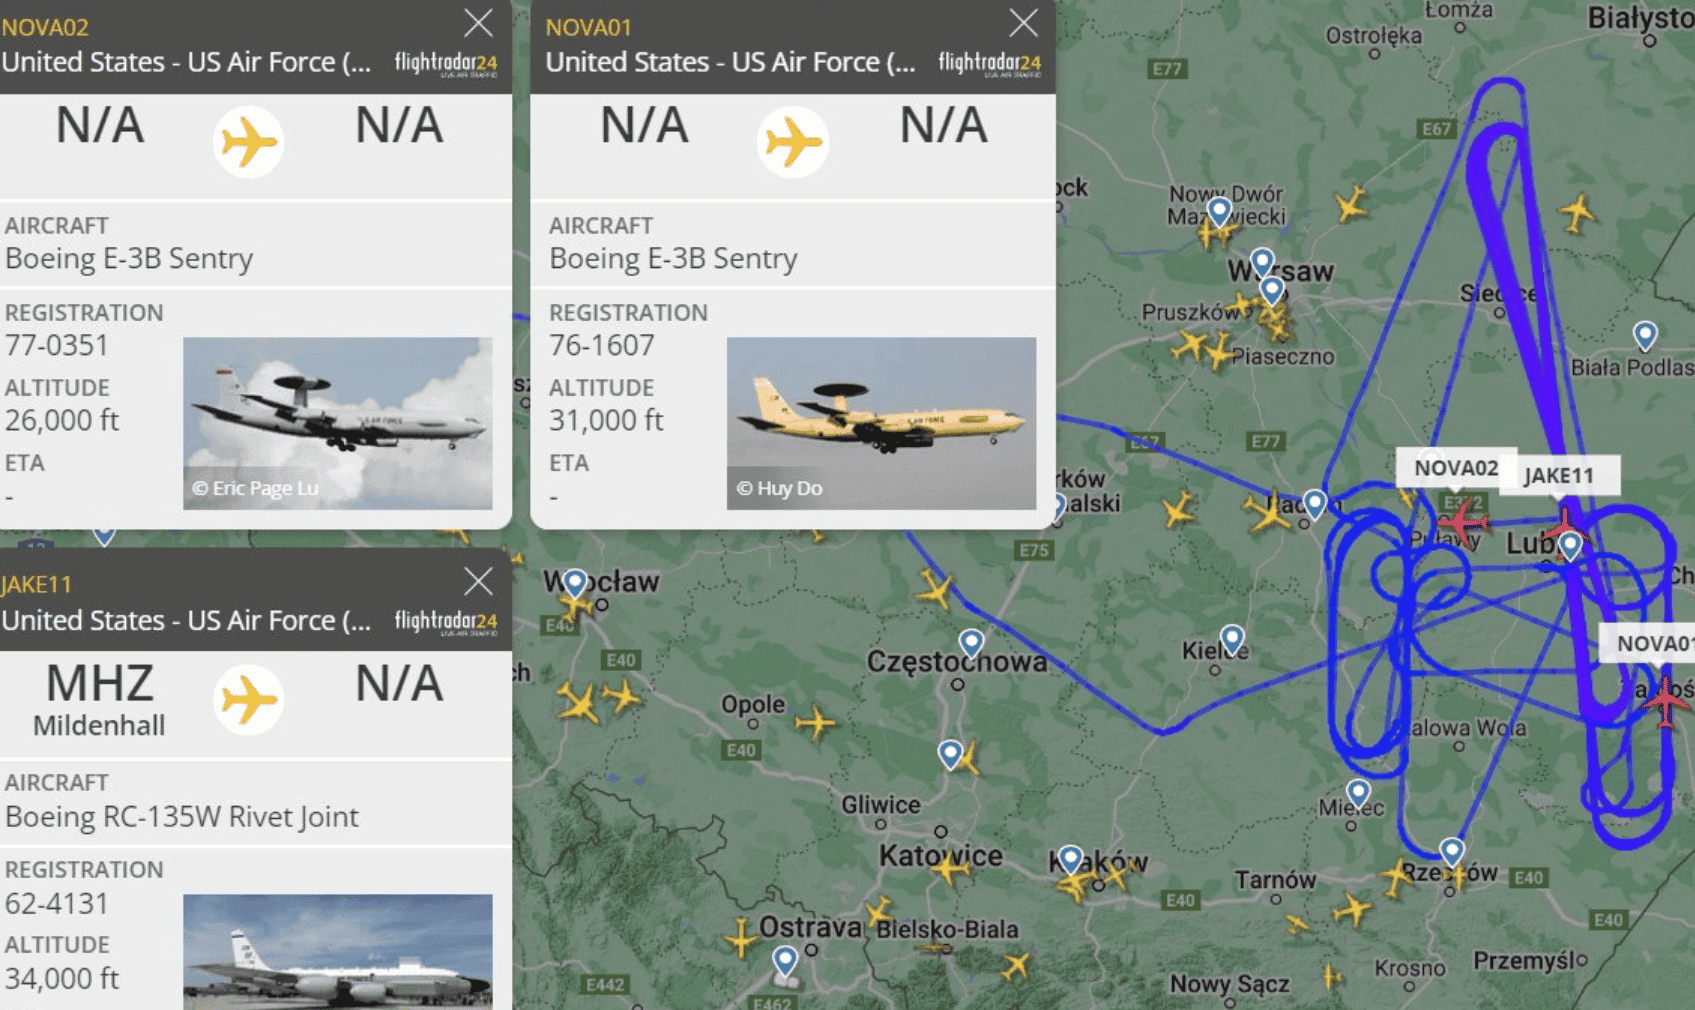 Nad Polską znalazły się tajemnicze samoloty.